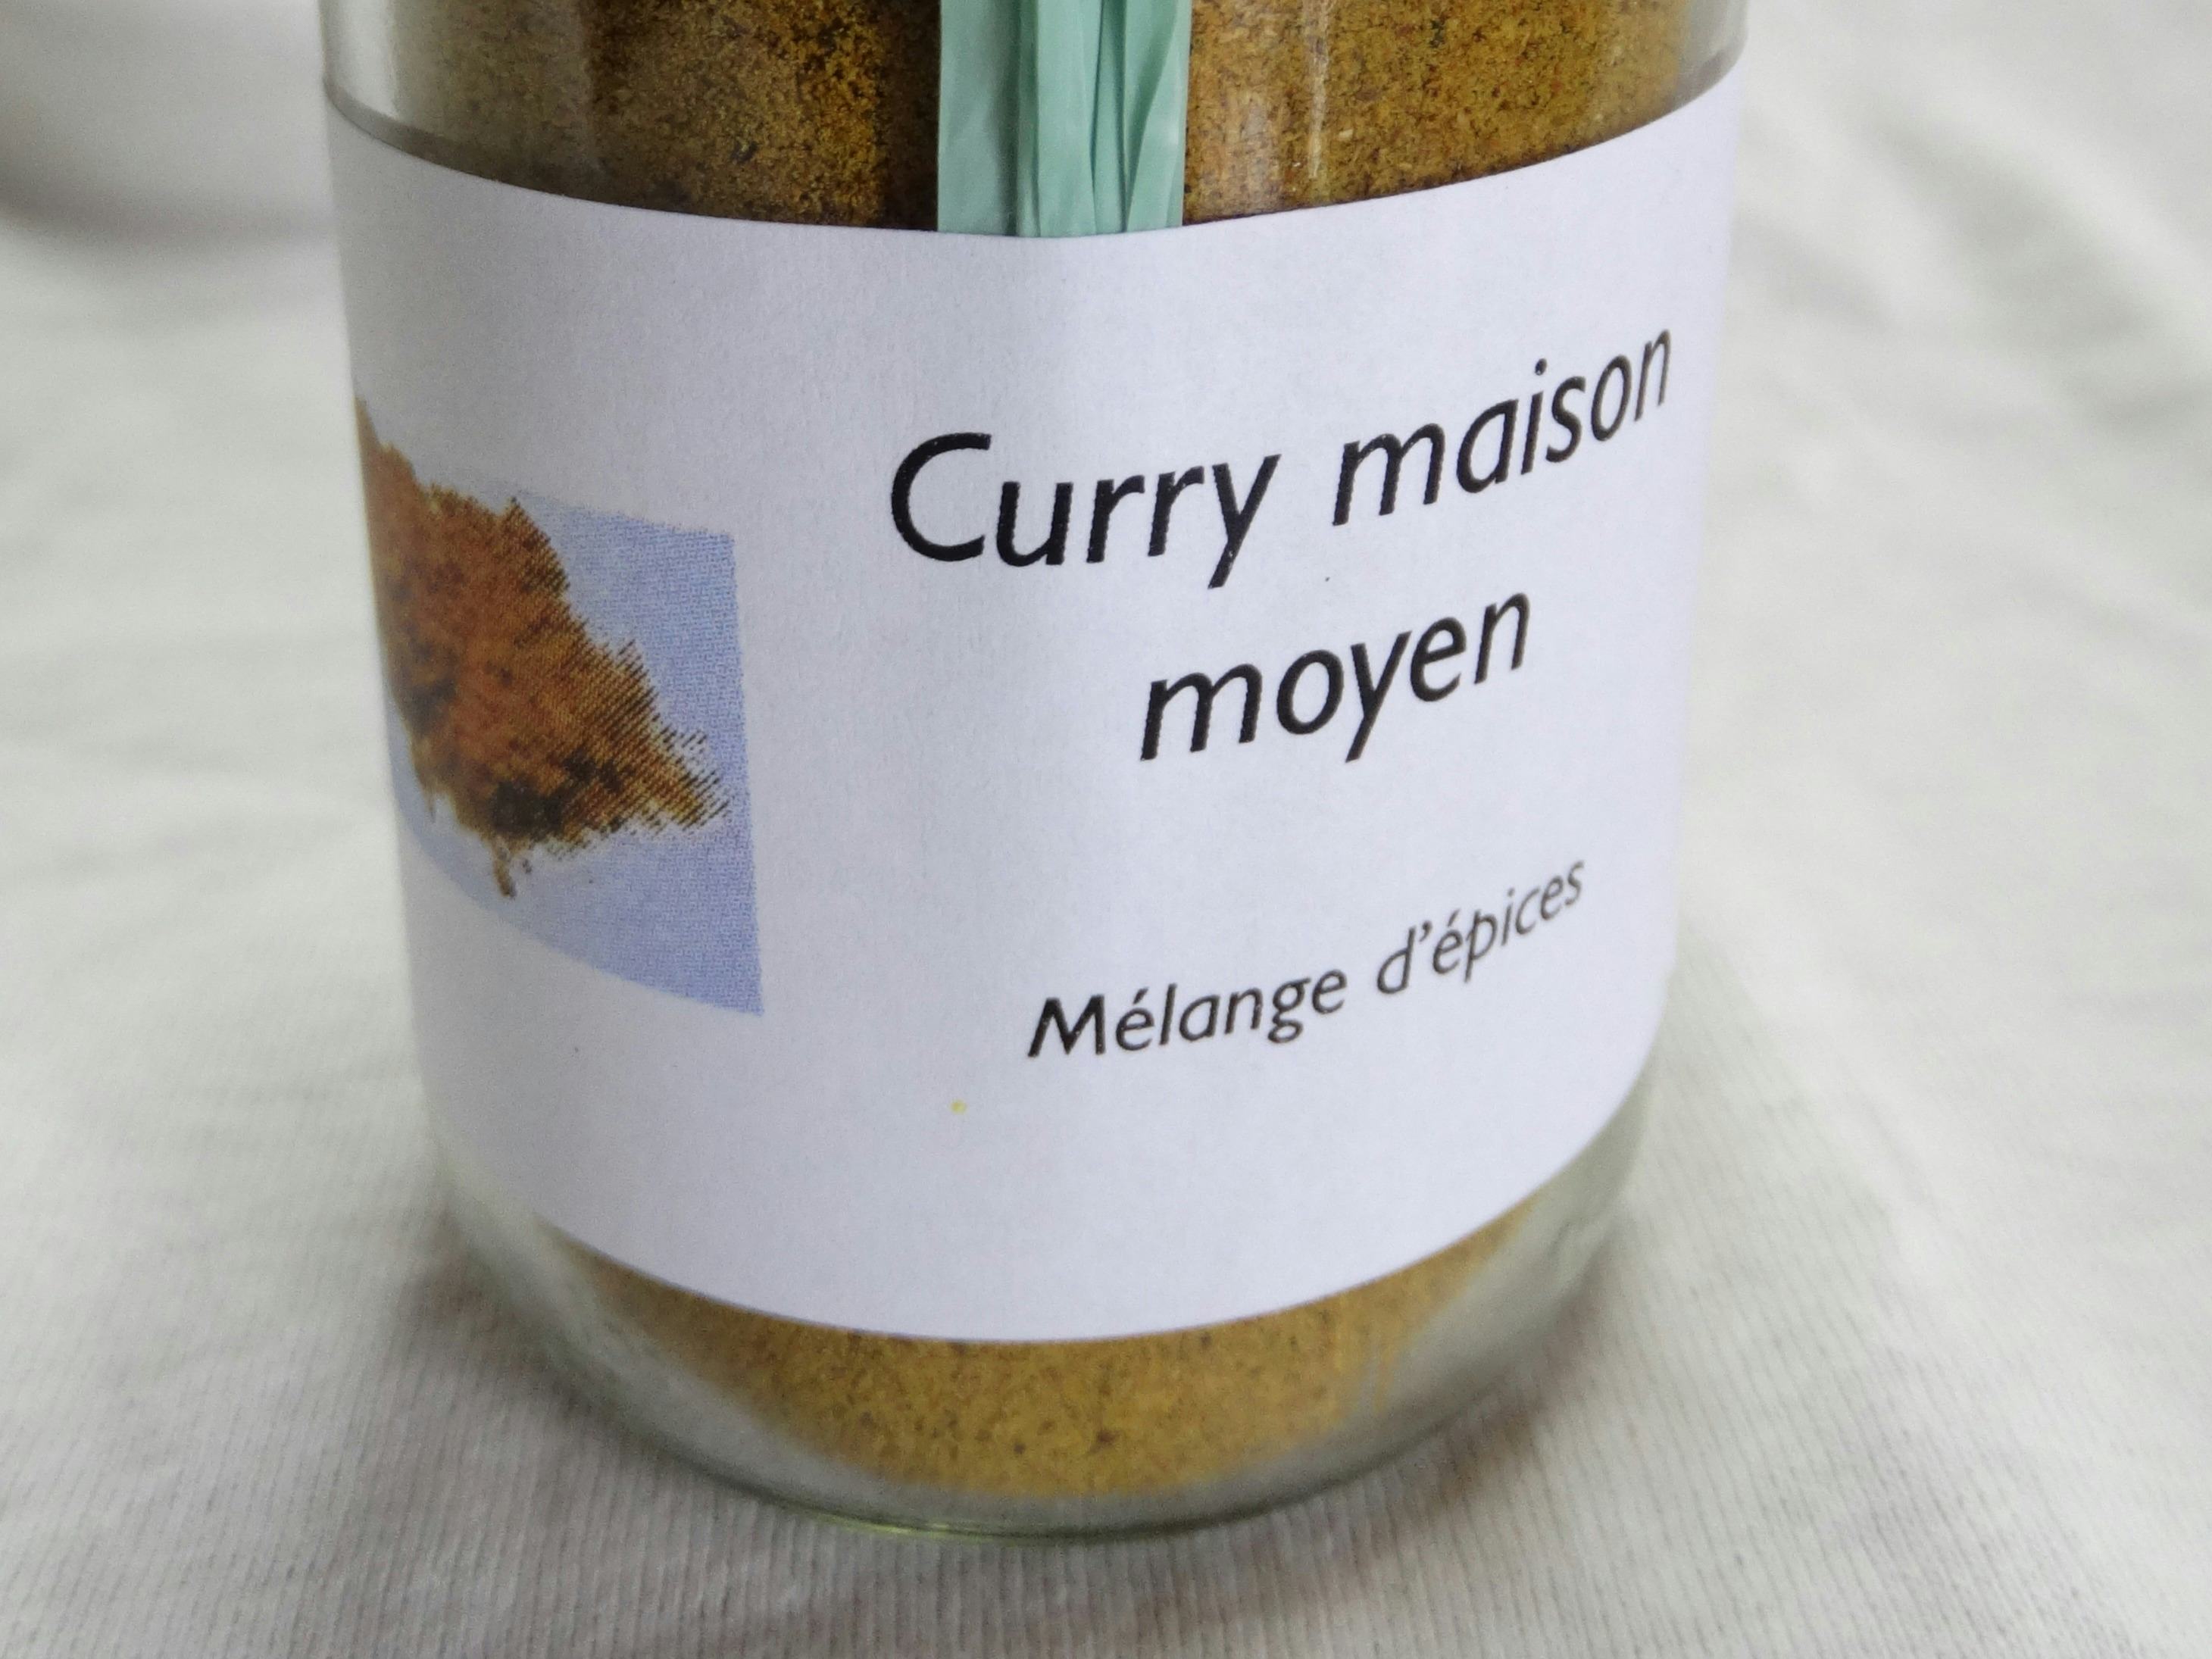 curry medio, Vinaigrerie-Moutarderie du Grand-Pré, Hautemorges, image 1 | Mimelis